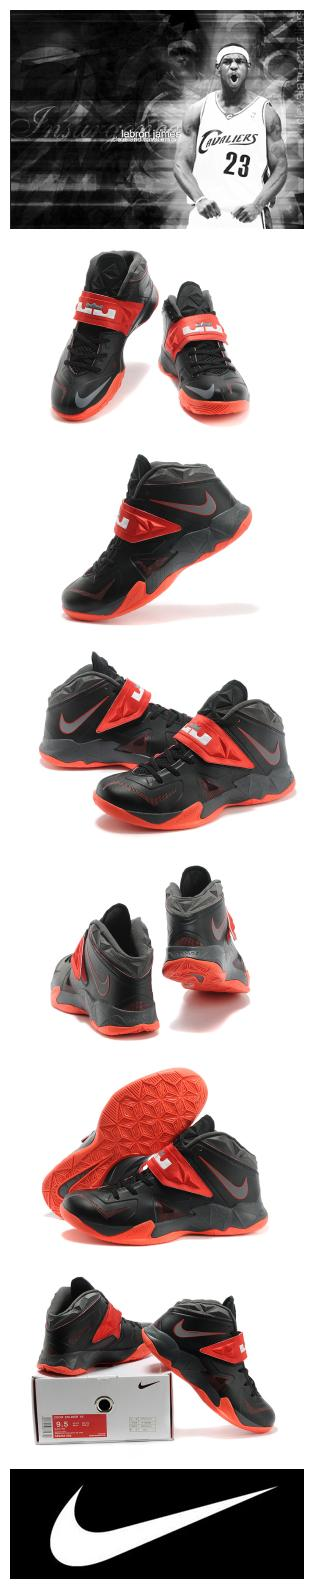 2014新款正品耐克nike 詹姆斯士兵7代 中邦篮球鞋 篮球鞋 室内篮球鞋